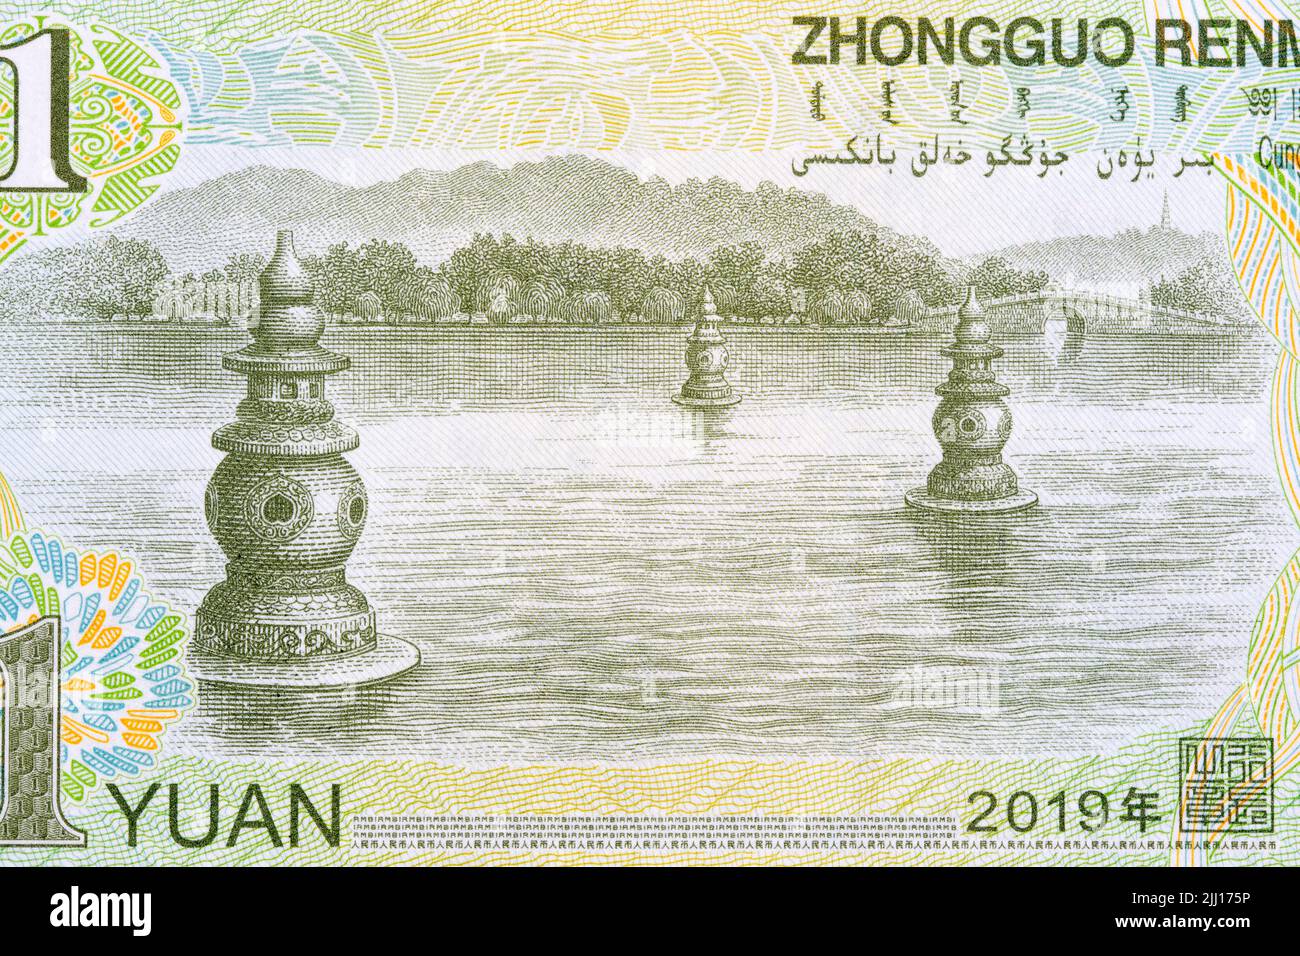 Riyuetan Lake in Hangzhou from Chinese money Stock Photo